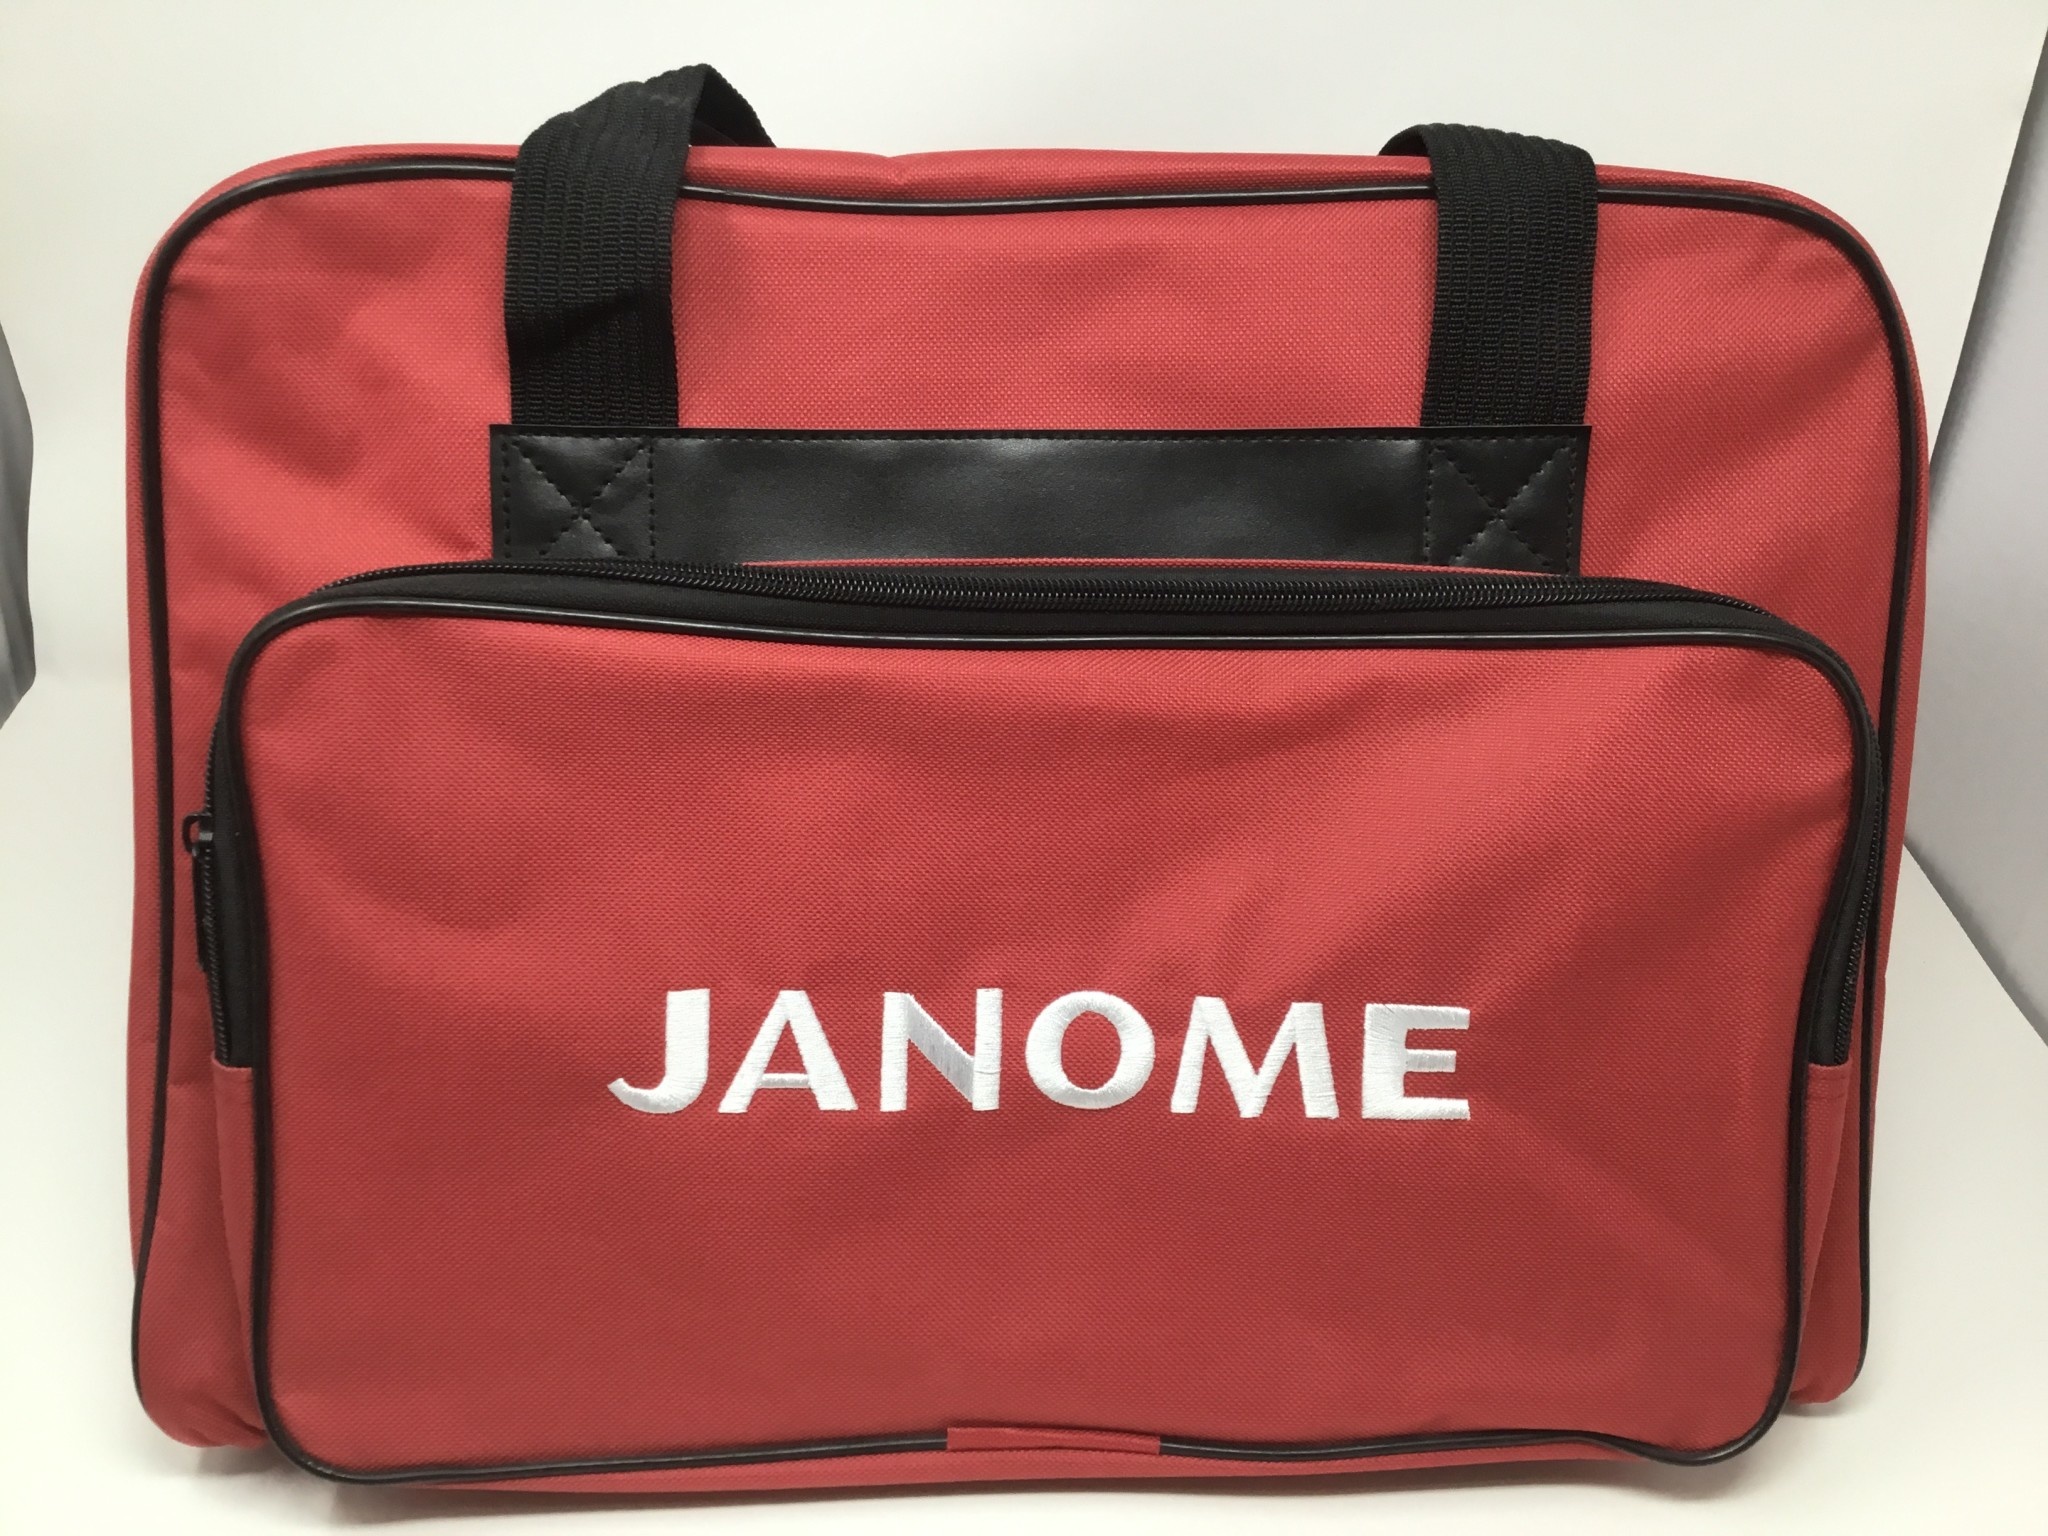 Janome Valise Janome rouge